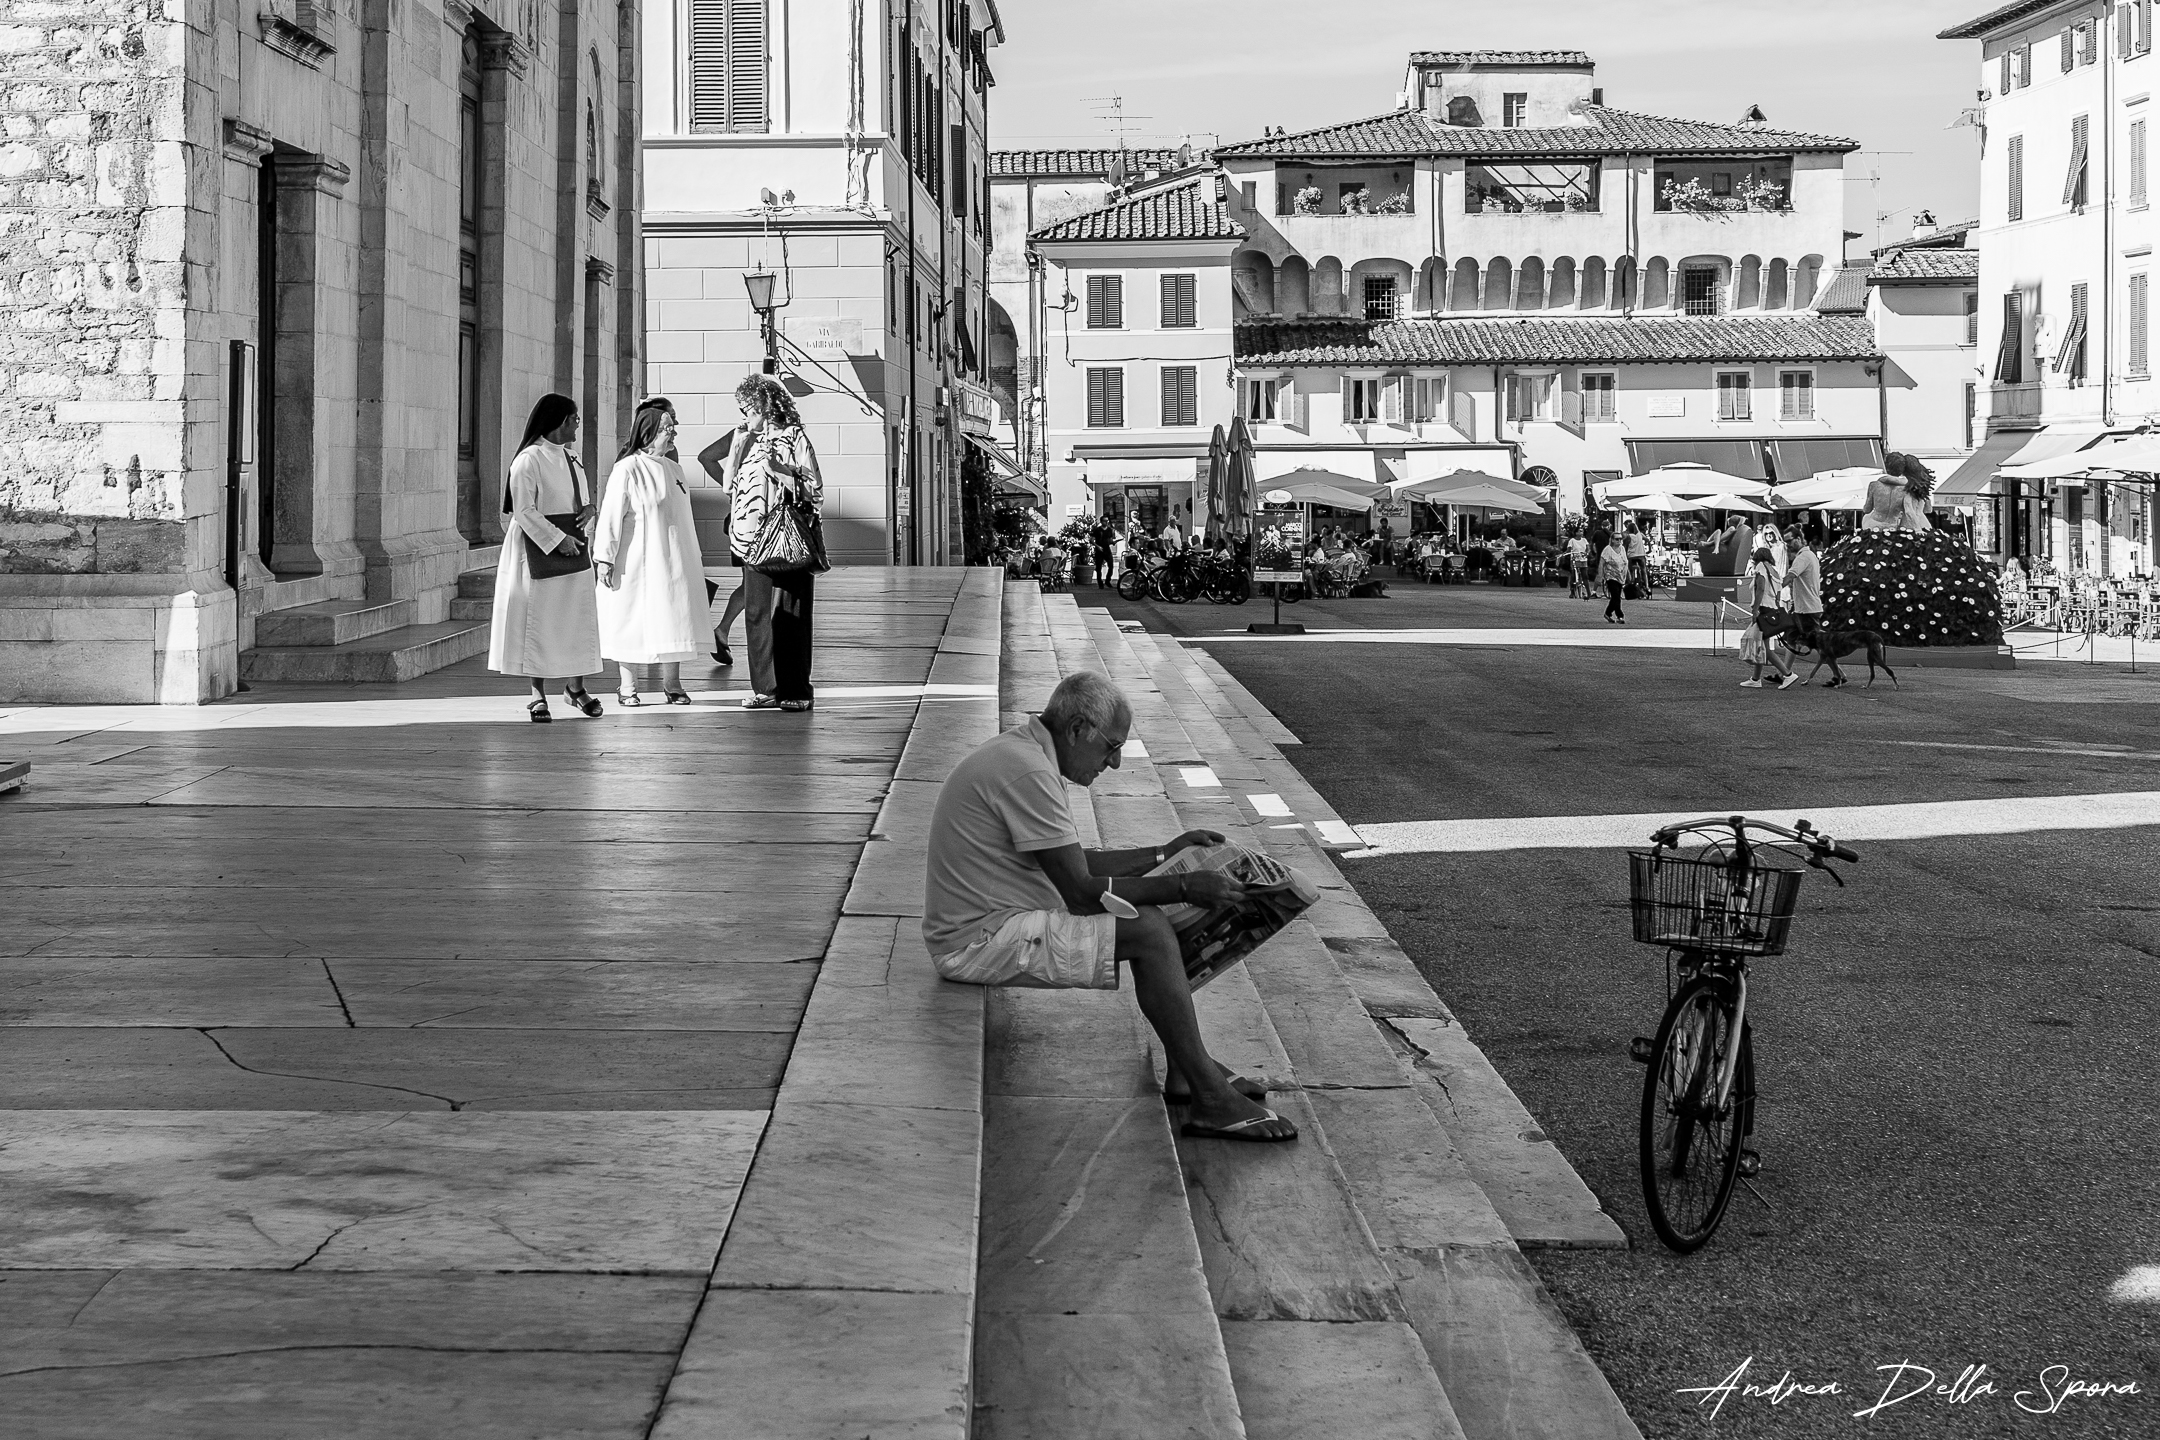 Pietrasanta – Piazza Duomo